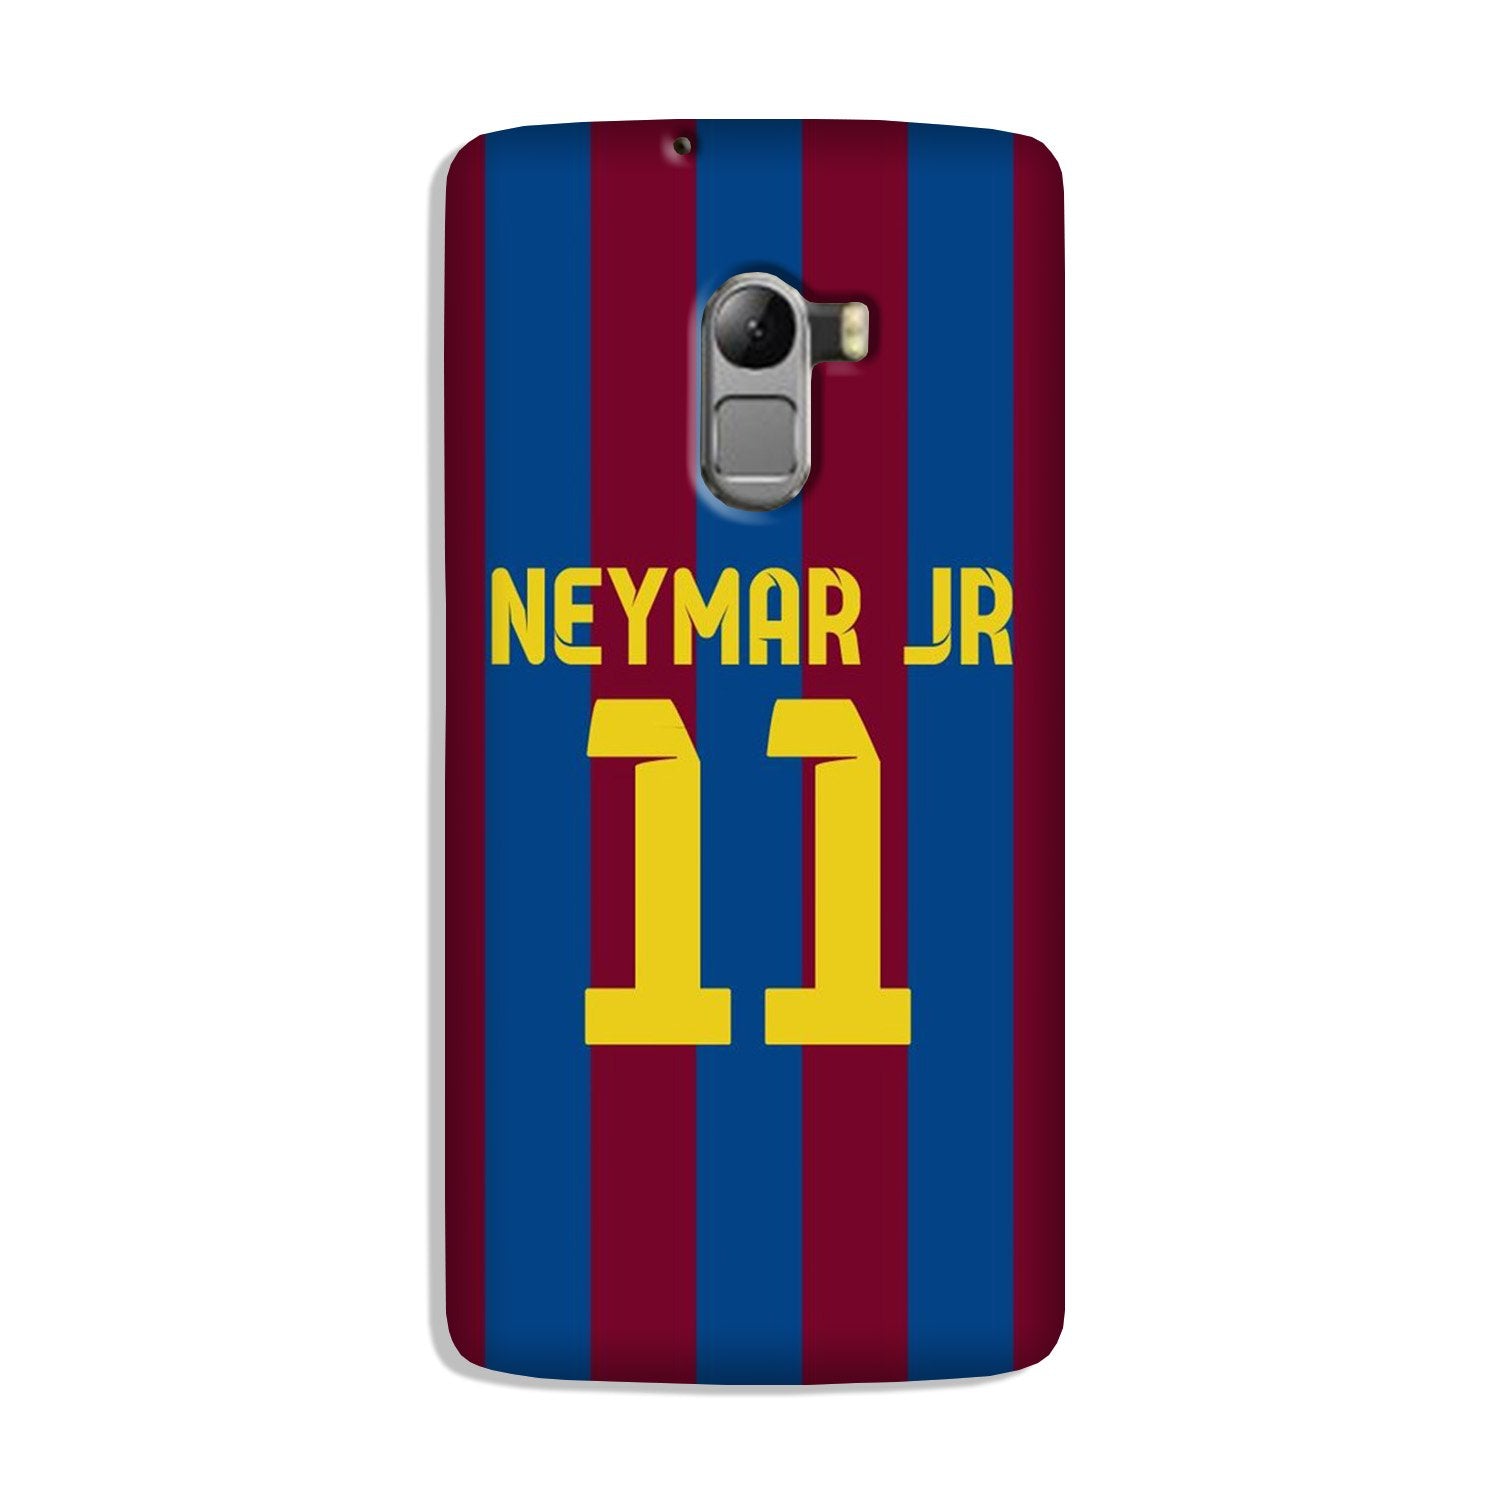 Neymar Jr Case for Lenovo K4 Note  (Design - 162)